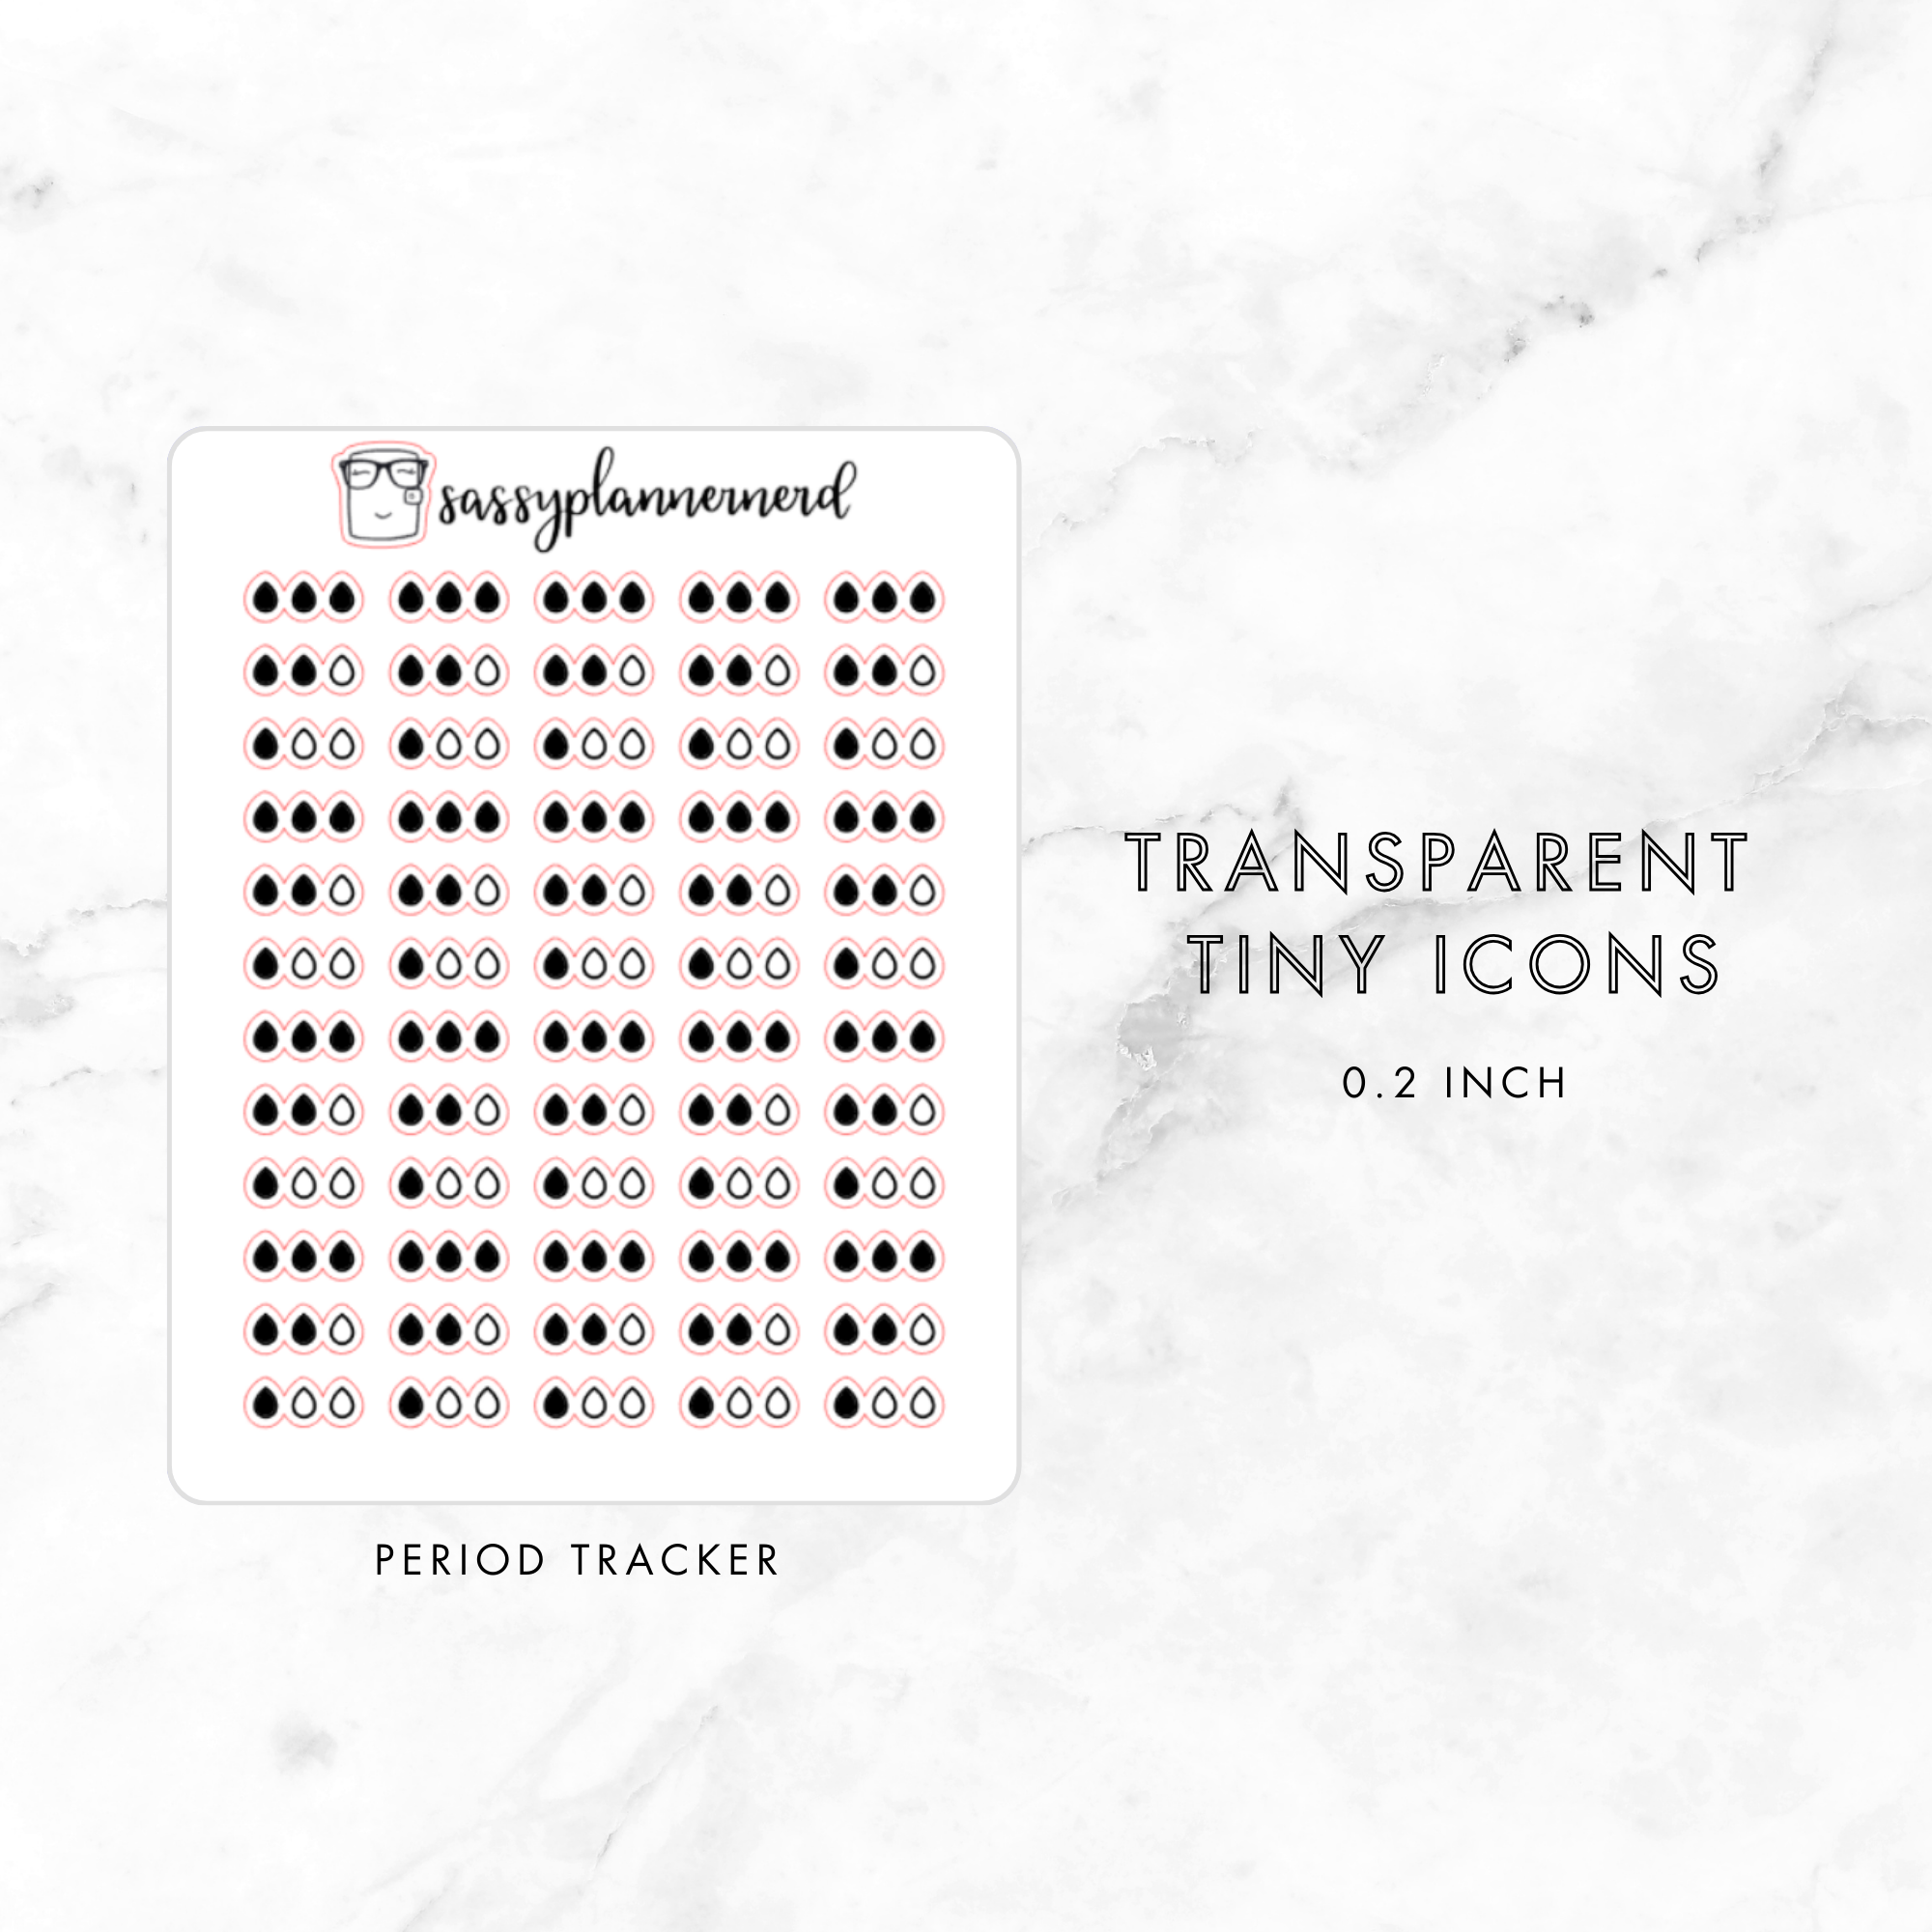 period tracker - tiny icons